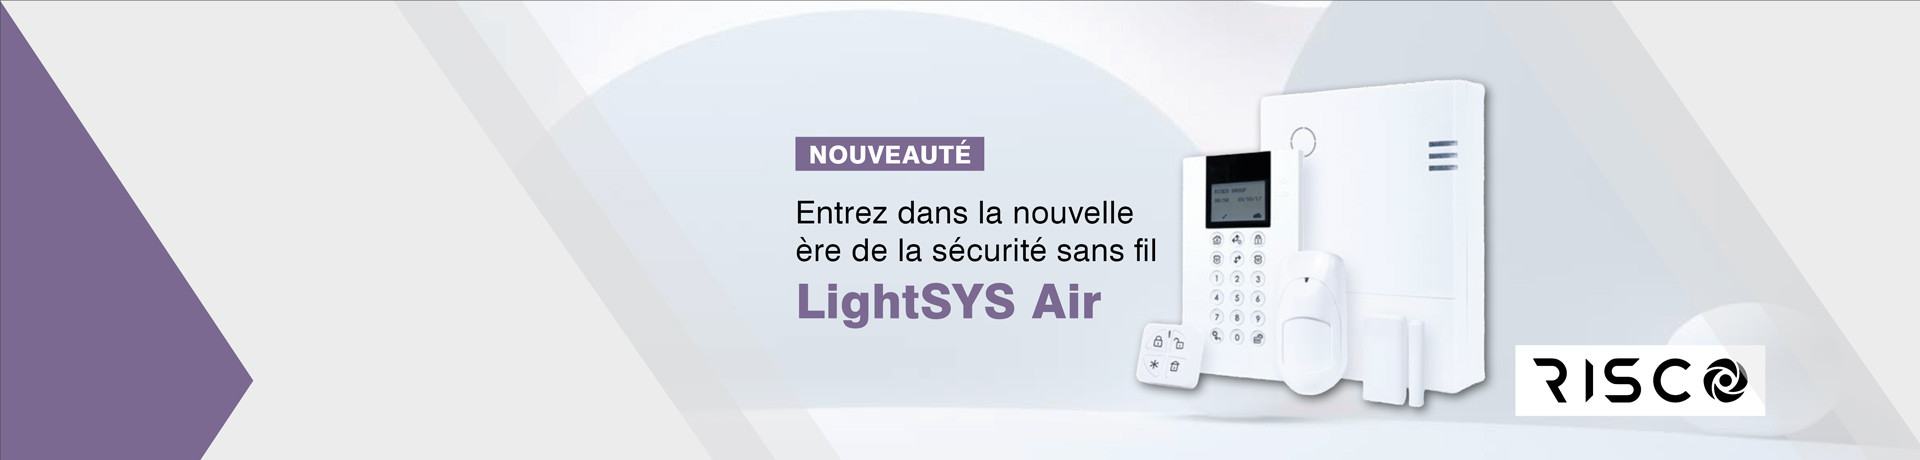 AVANT-PREMIÈRE LightSYS Air